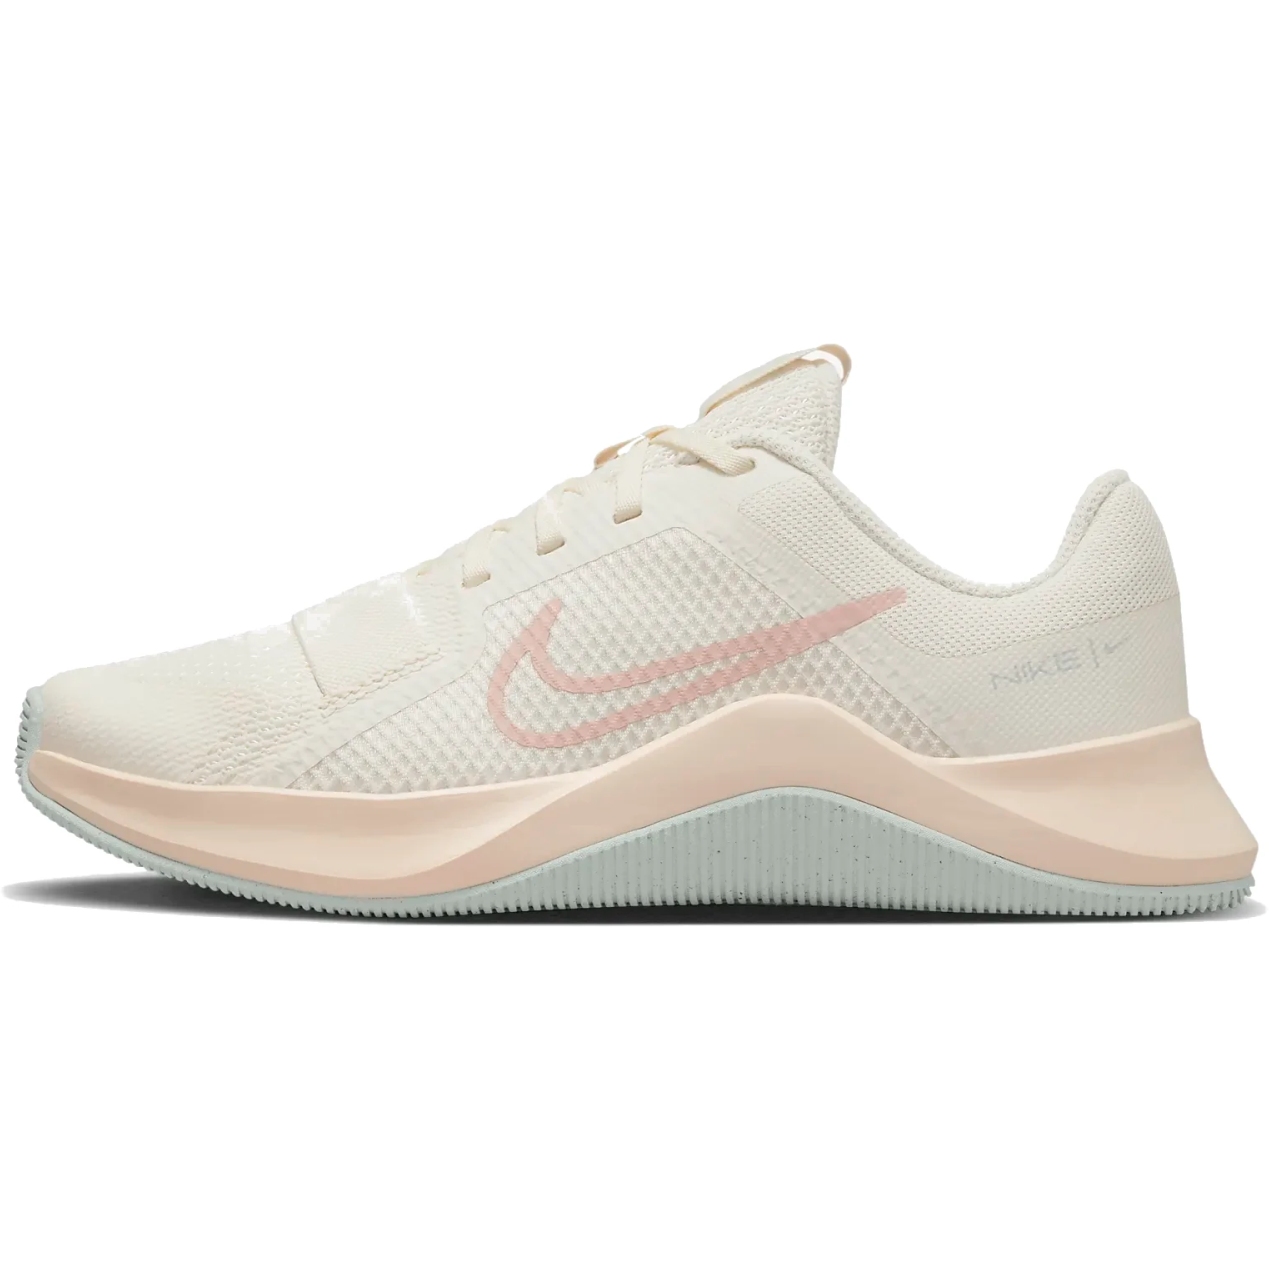 Produktbild von Nike MC Trainer 2 Fitnessschuhe Damen - pale ivory/guava ice/light silver/pink oxford DM0824-104